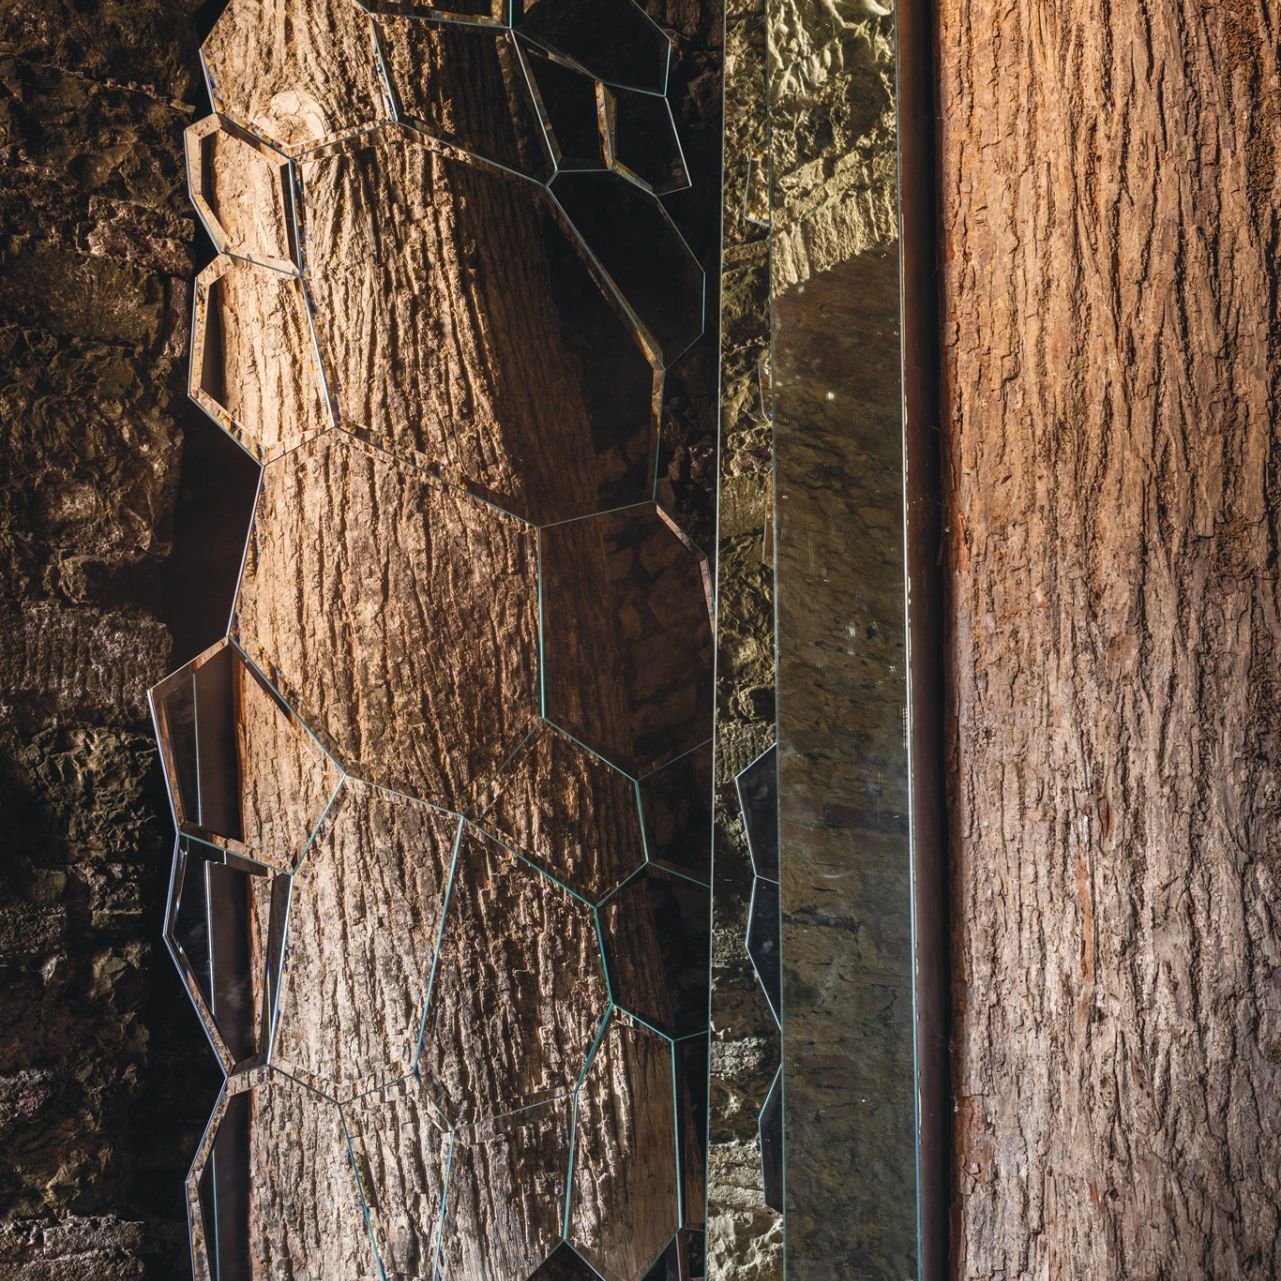   Jubilé . Gioco di riflessi tra lo specchio e l’opera “L’albero di Ama” di Michelangelo Pistoletto. 